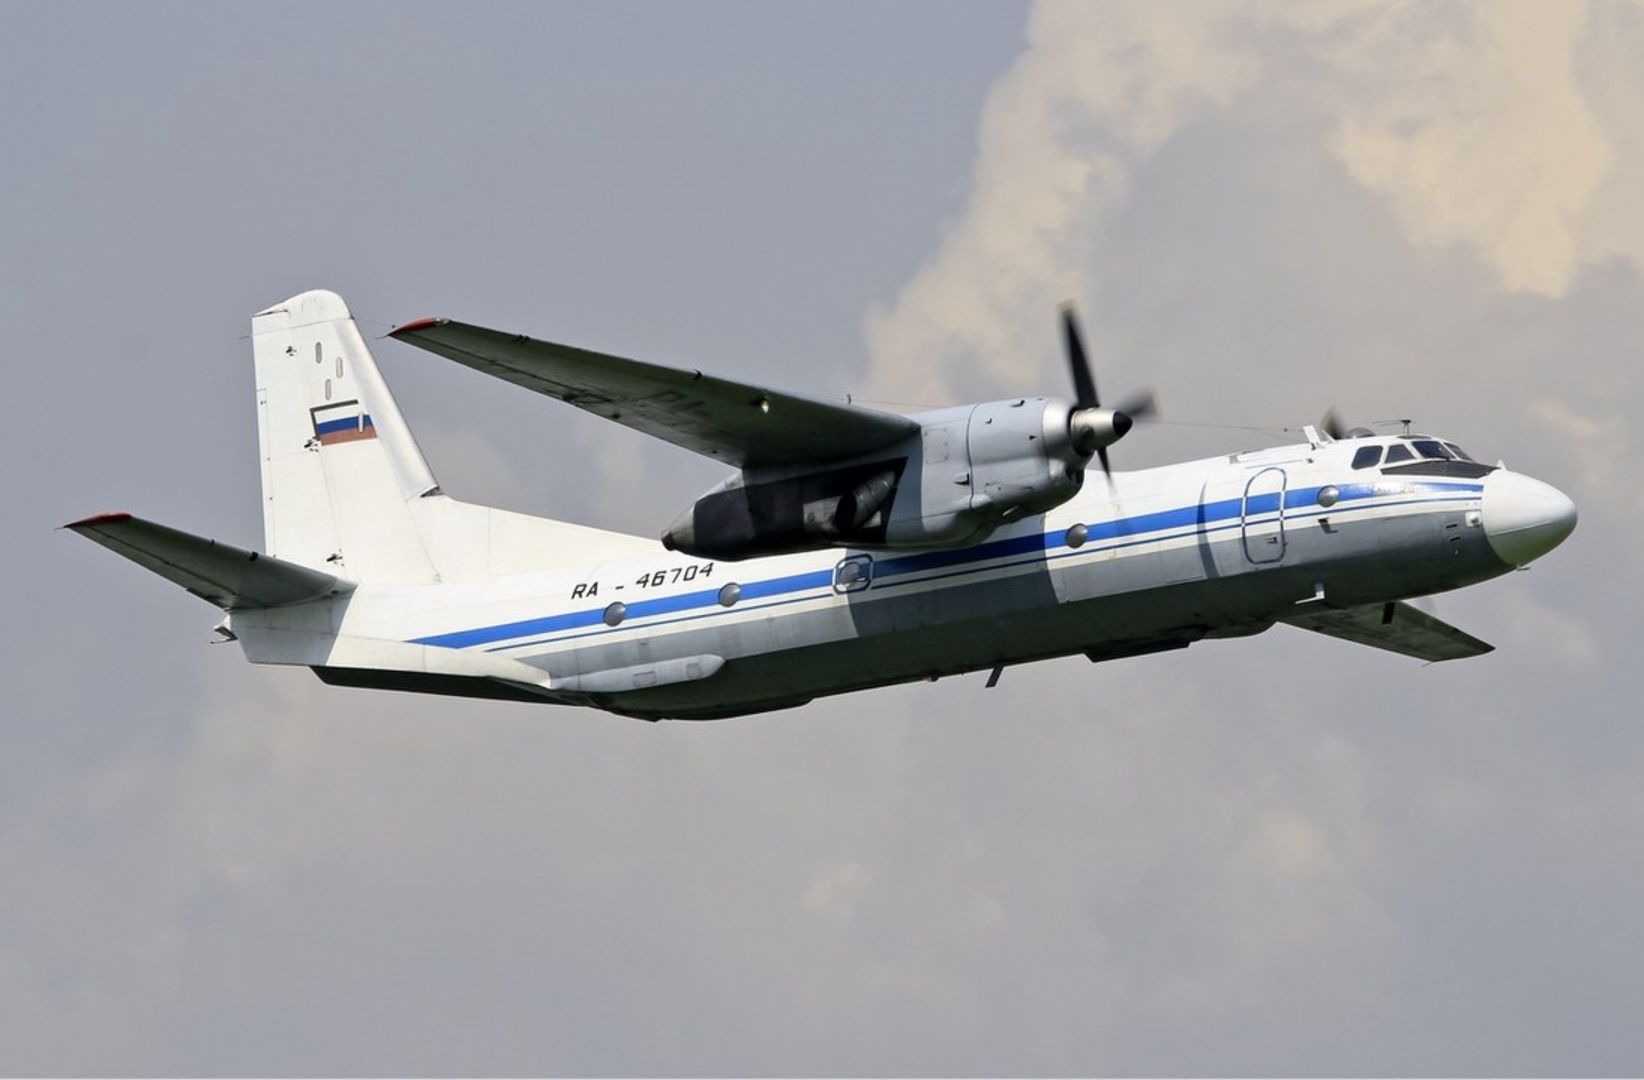 Rosja. Stracono łączność z samolotem An-26. Miejsce katastrofy już ustalone